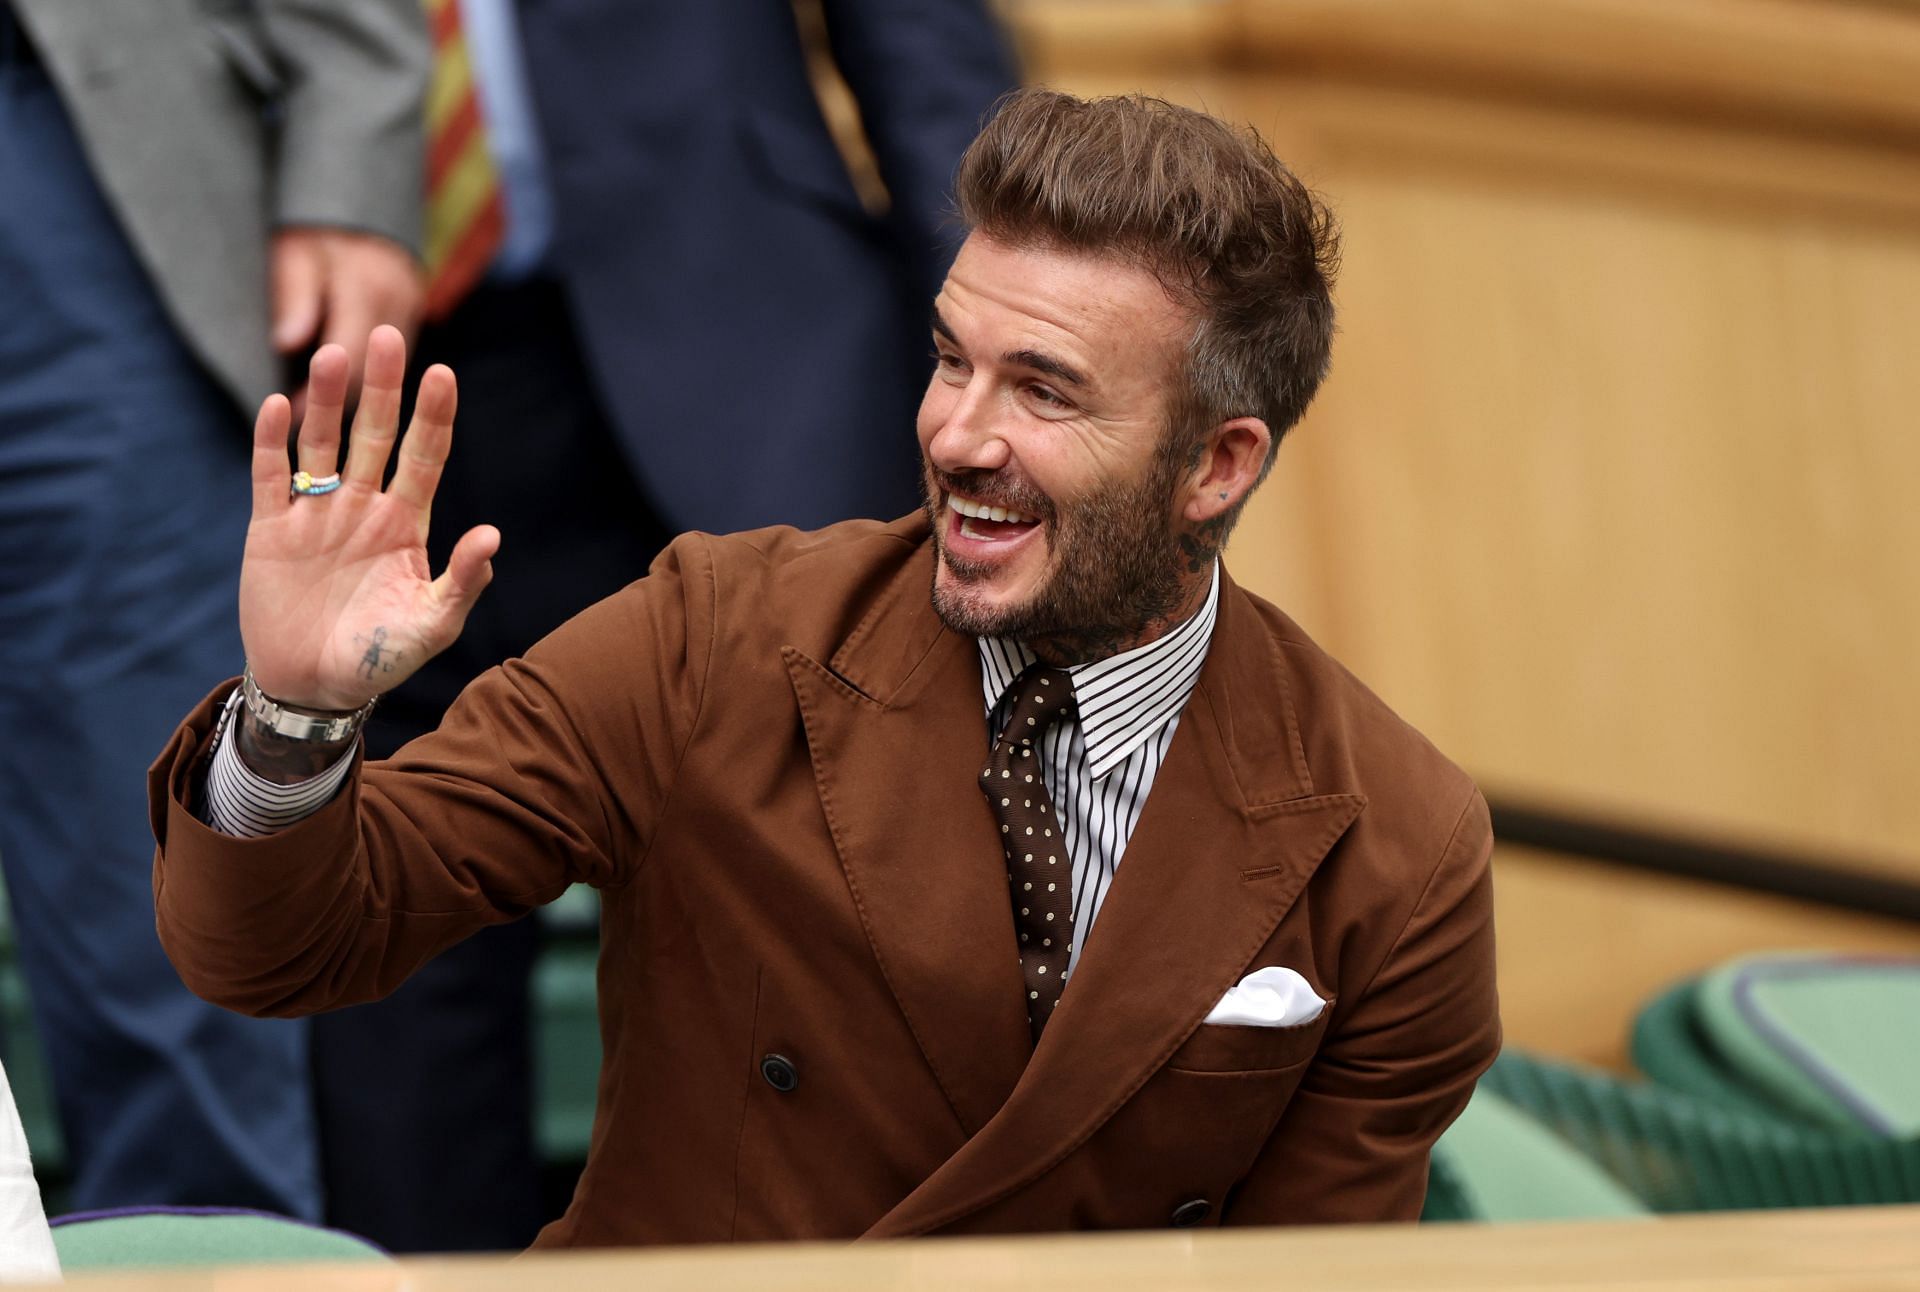 David Beckham during the Wimbledon quarterfinals at the Centre Court.